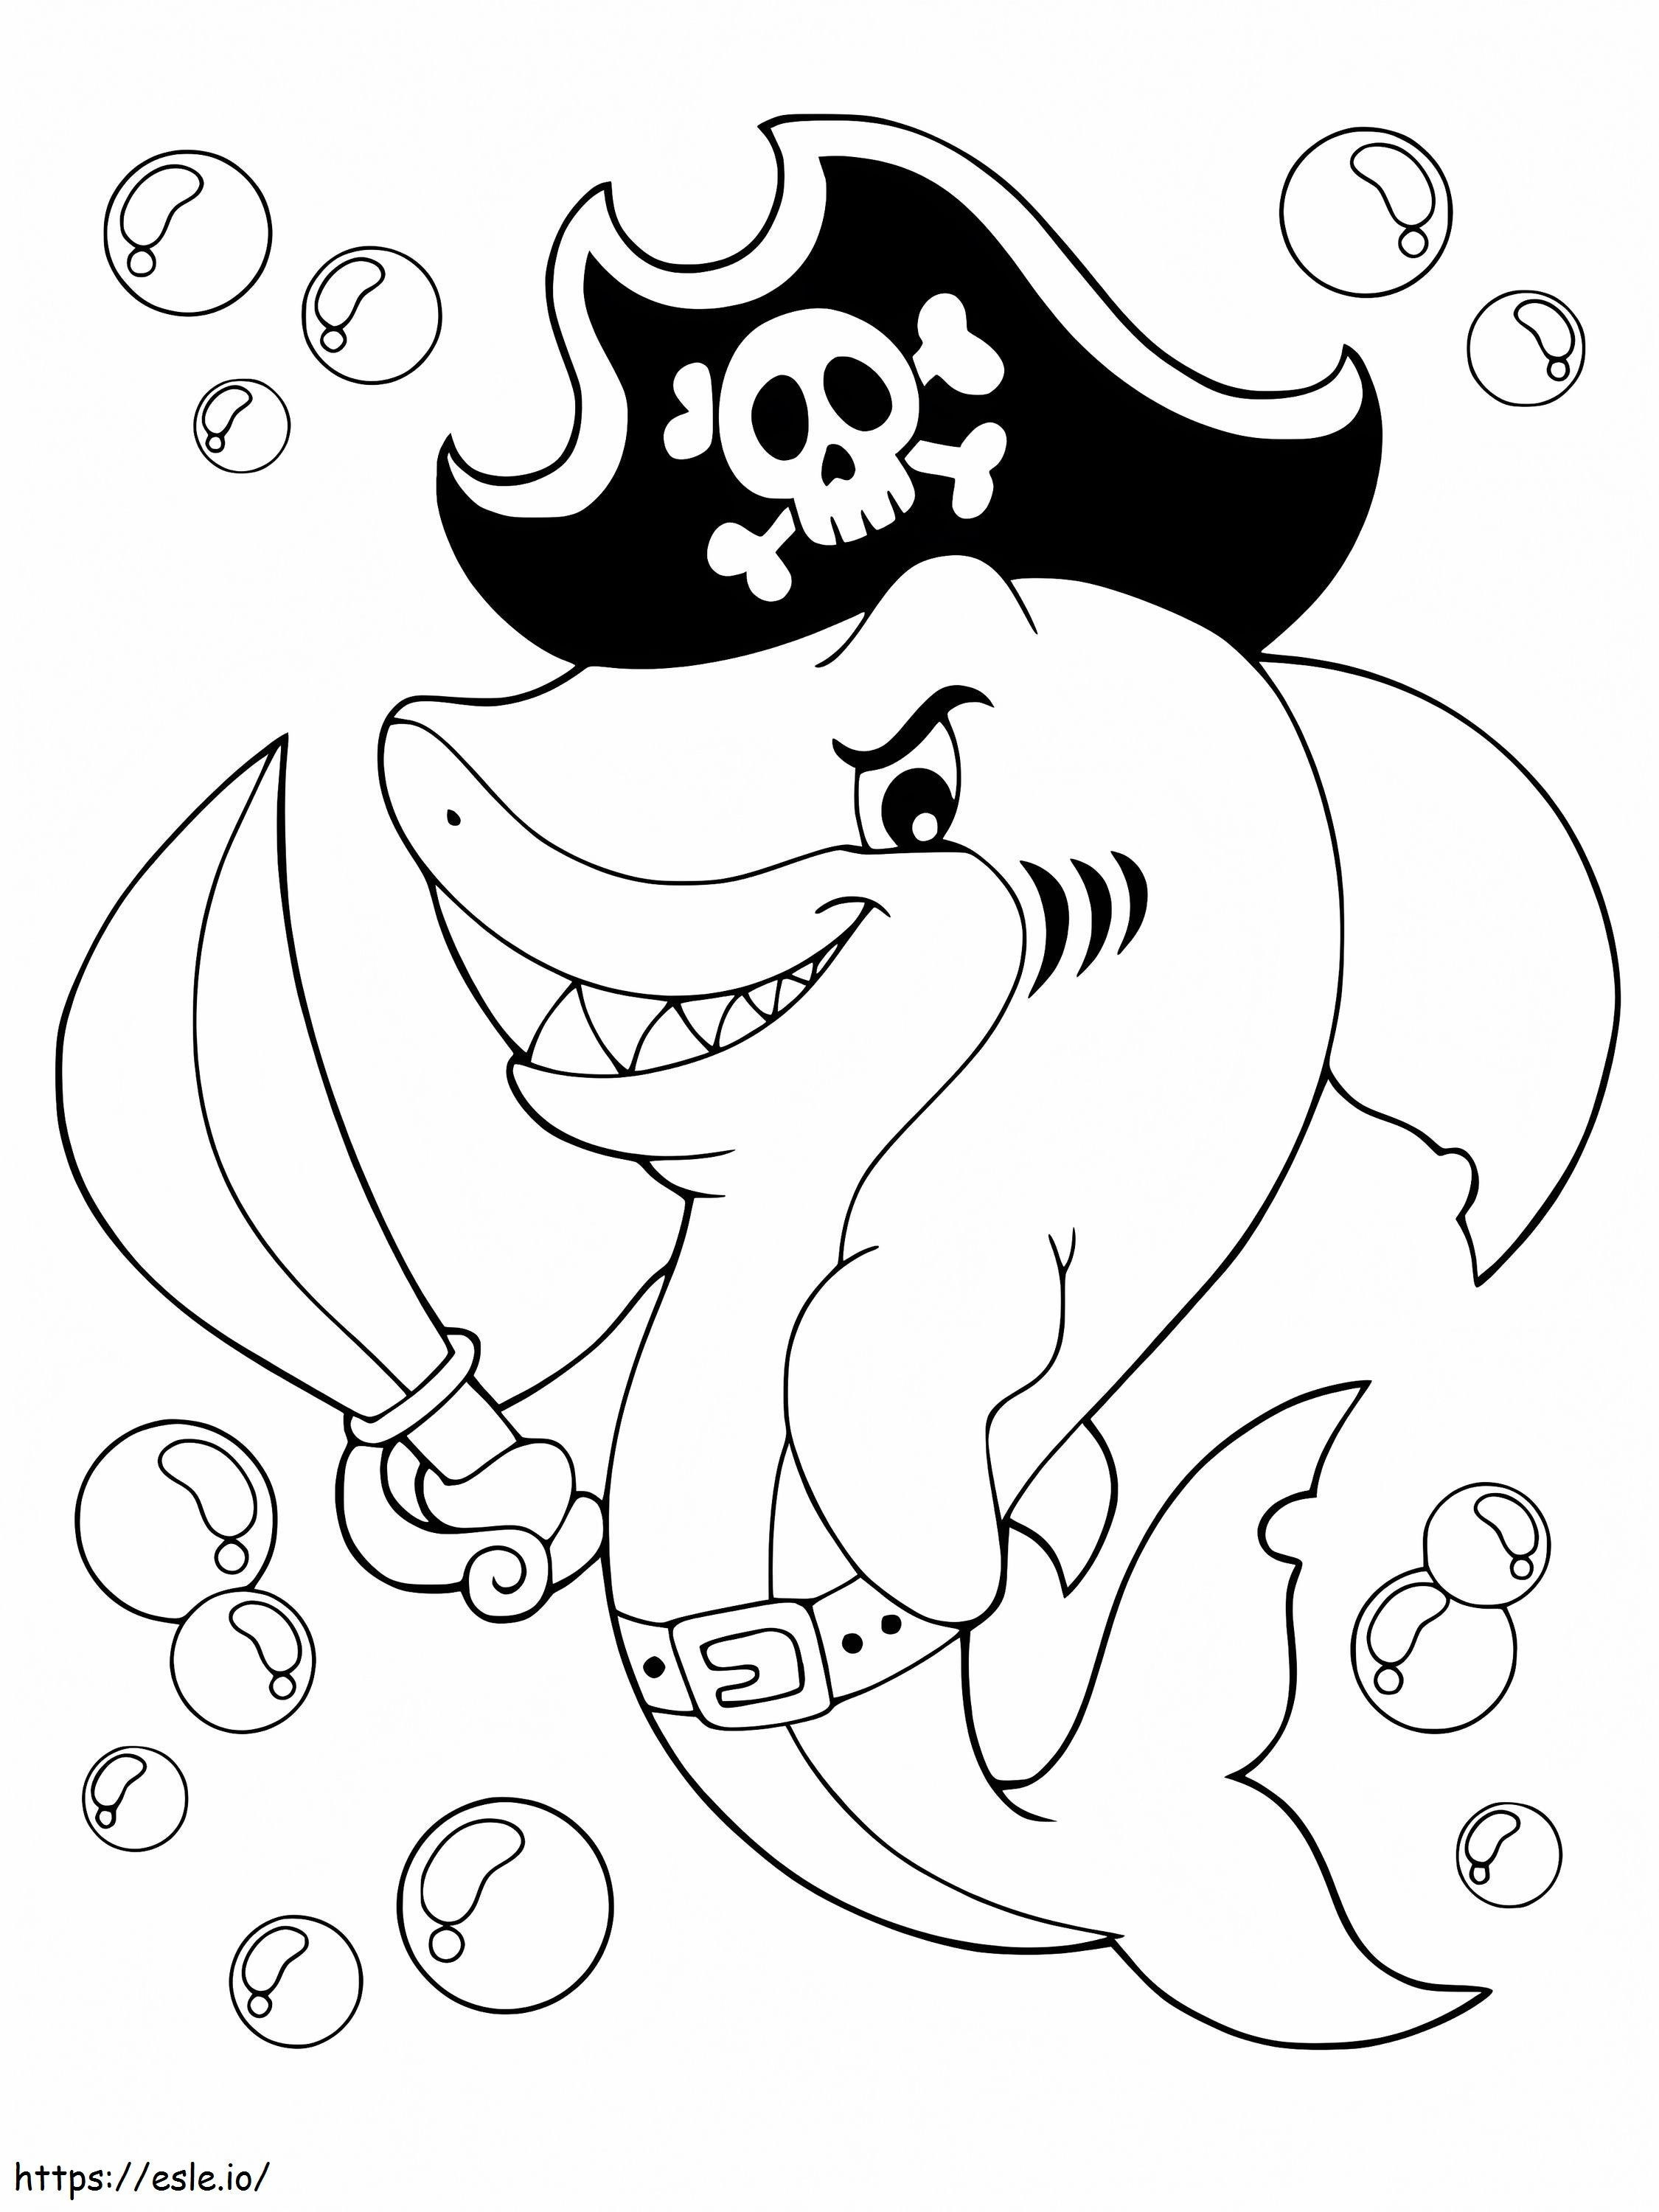 Tubarão Pirata para colorir